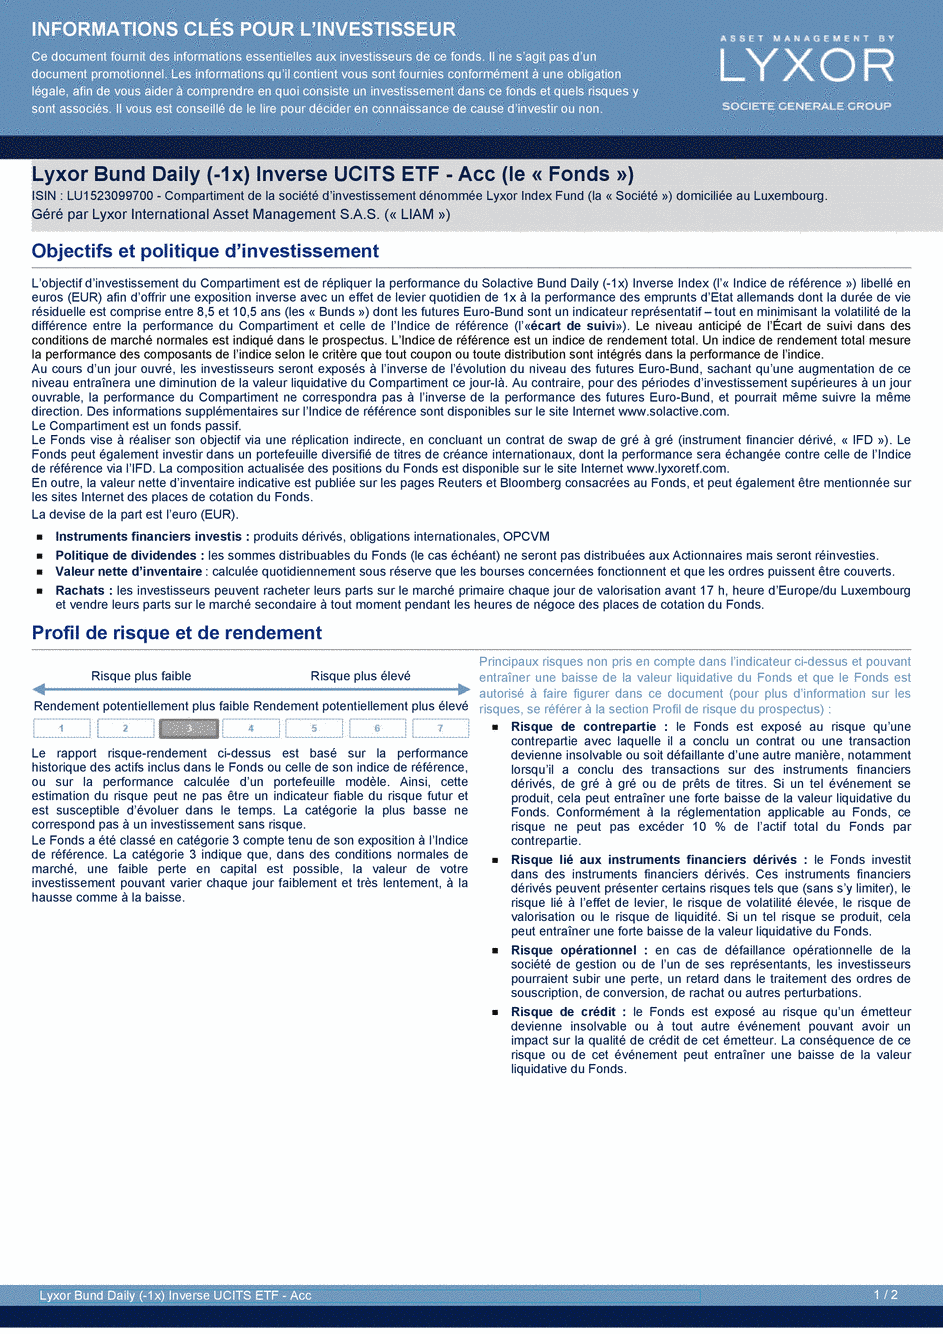 DICI Lyxor Bund Daily (-1x) Inverse UCITS ETF - Acc - 21/08/2019 - Français